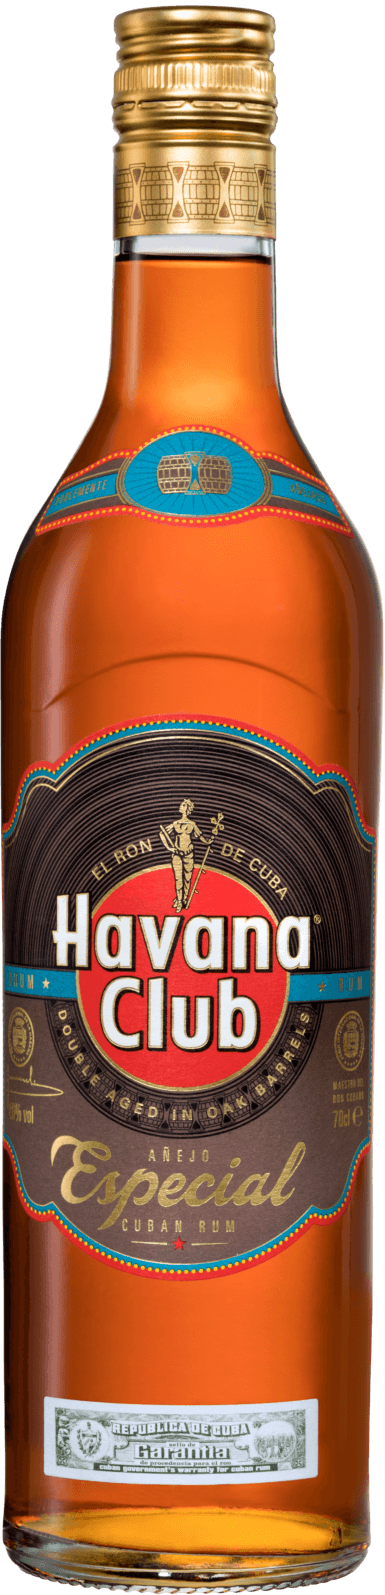 rum Club Club Havana Golden | Especial Havana